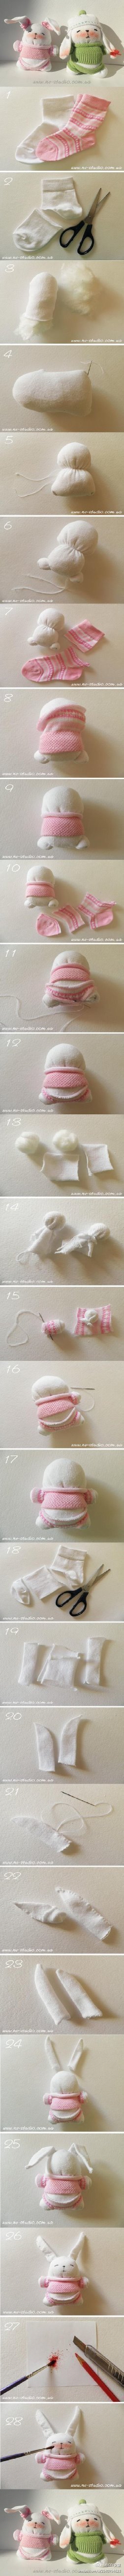 袜子做的兔子玩偶，好可爱~（源自花瓣网）（转）更多DIY创意生活☑欢迎关注DIY女皇